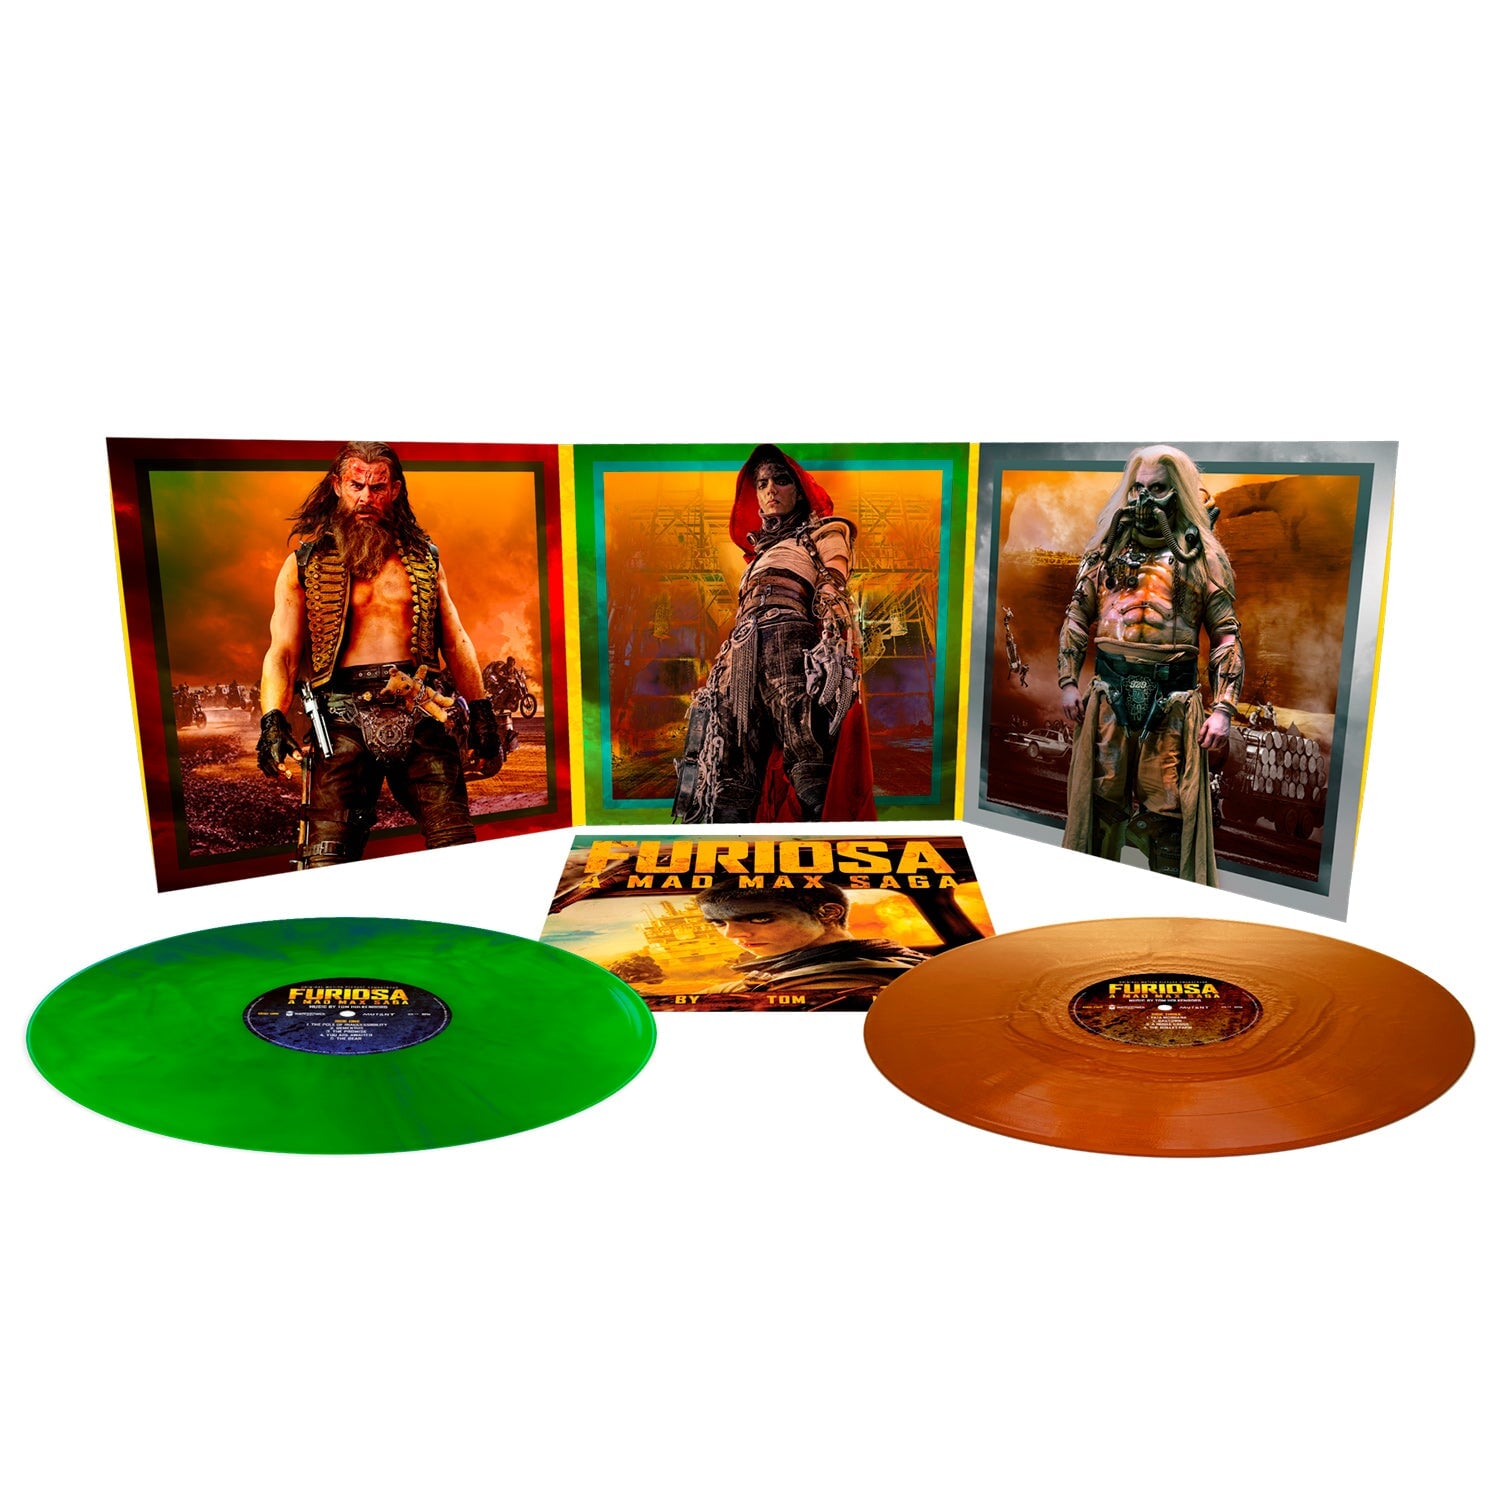 Furiosa: A Mad Max Saga (Original Motion Picture Soundtrack) (Exclusive Color Vinyl 2LP)